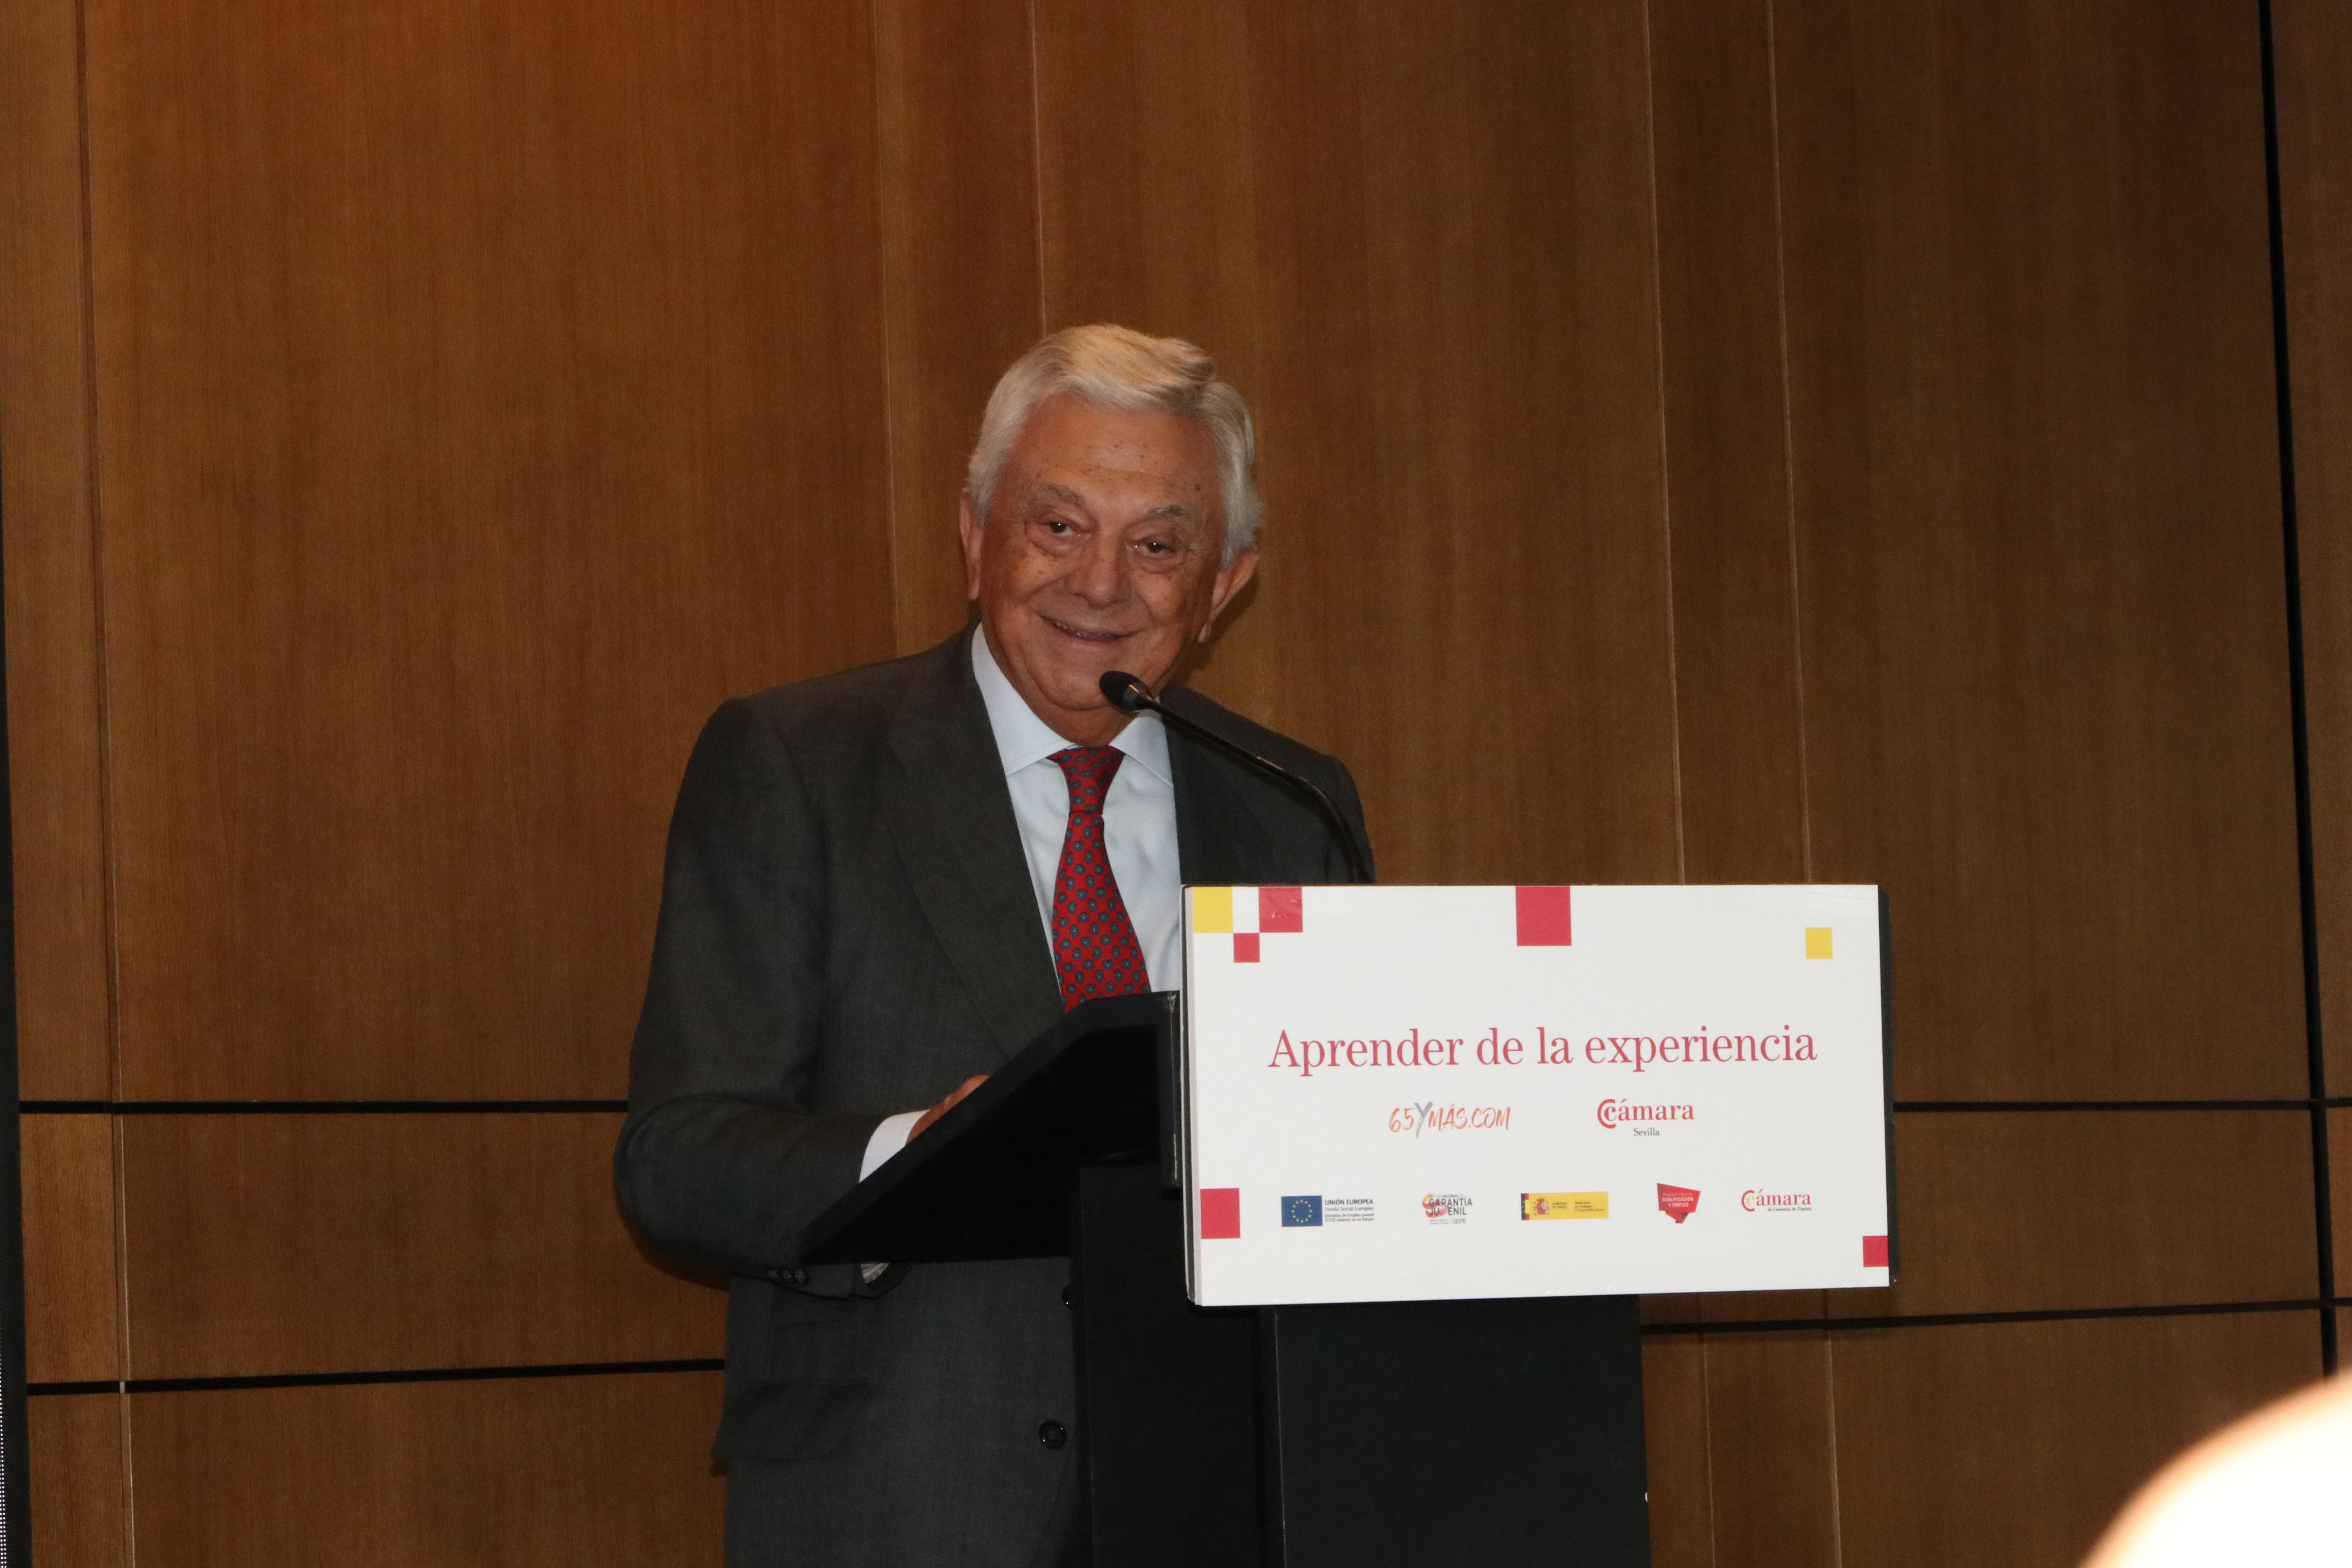 Francisco Herrero León: "La convivencia de diferentes generaciones enriquece la vida empresarial"